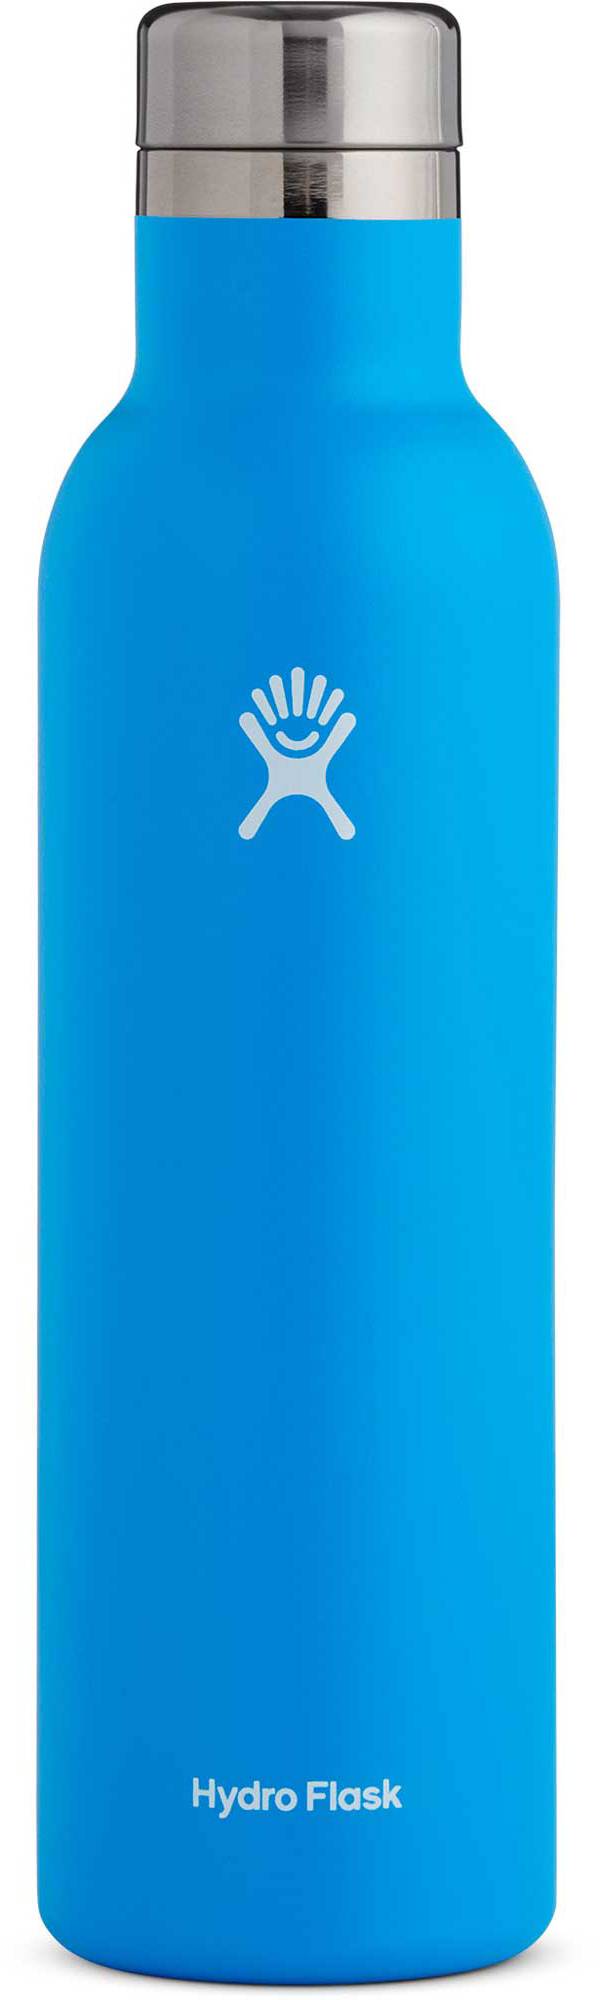 Hydro Flask 25 oz Wine Bottle product image